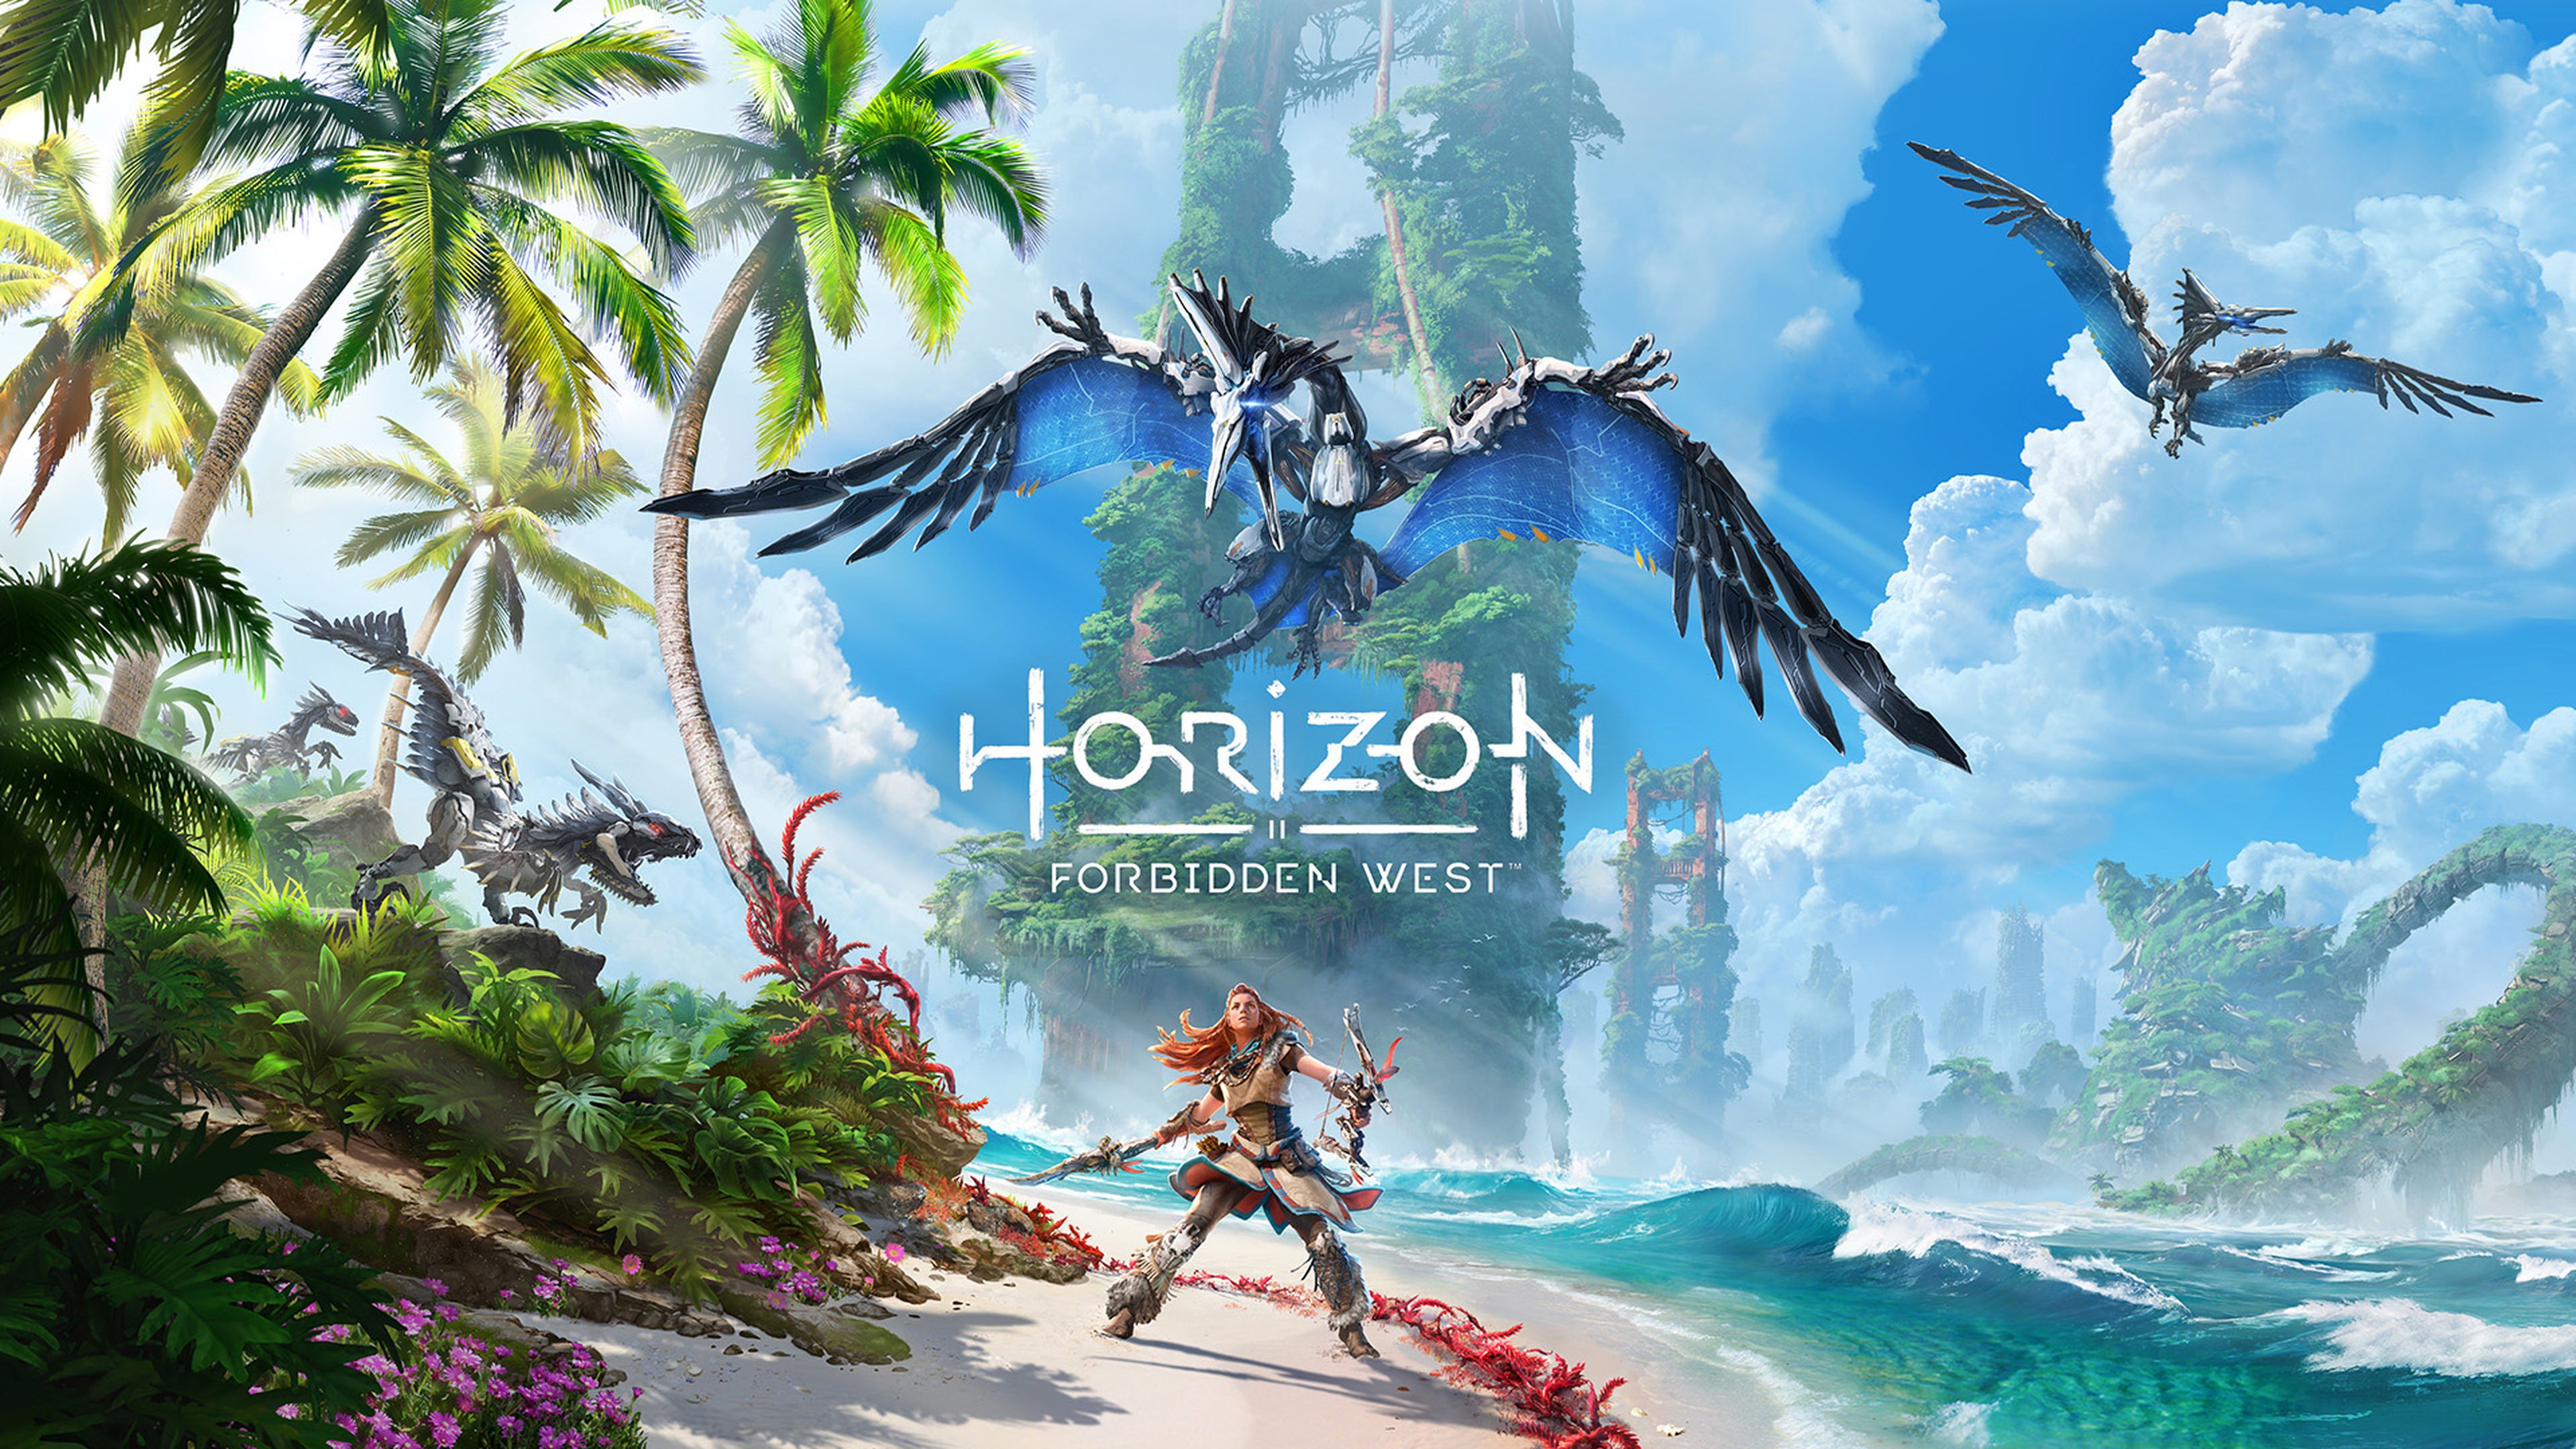 Horizon 2 Forbidden West